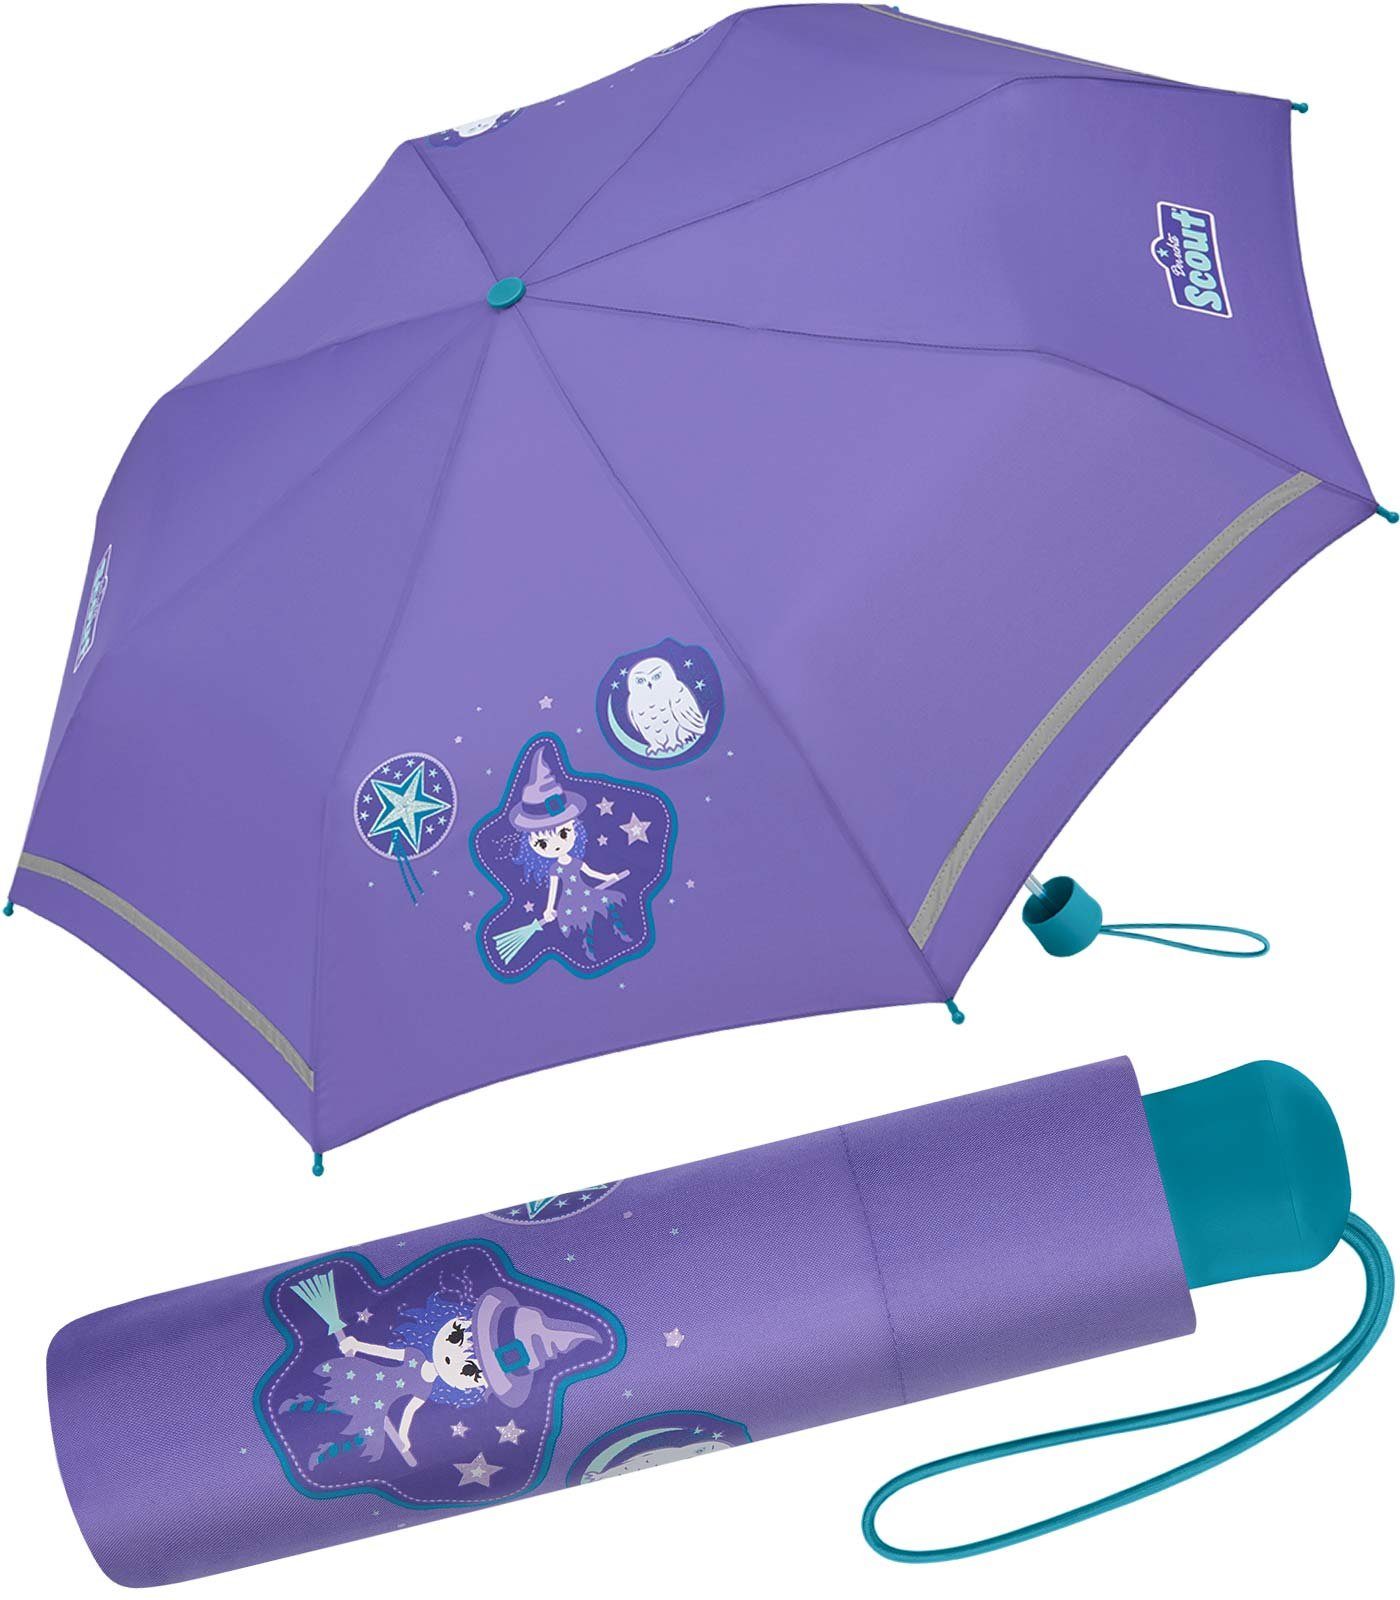 Taschenschirm mit extra Scout leicht Kinder und reflektierend - Mini Kinderschirm, Purple der bedruckt, Kinder Marke für Scout, für Typ Magic gemacht, Regenschirm Taschenregenschirm